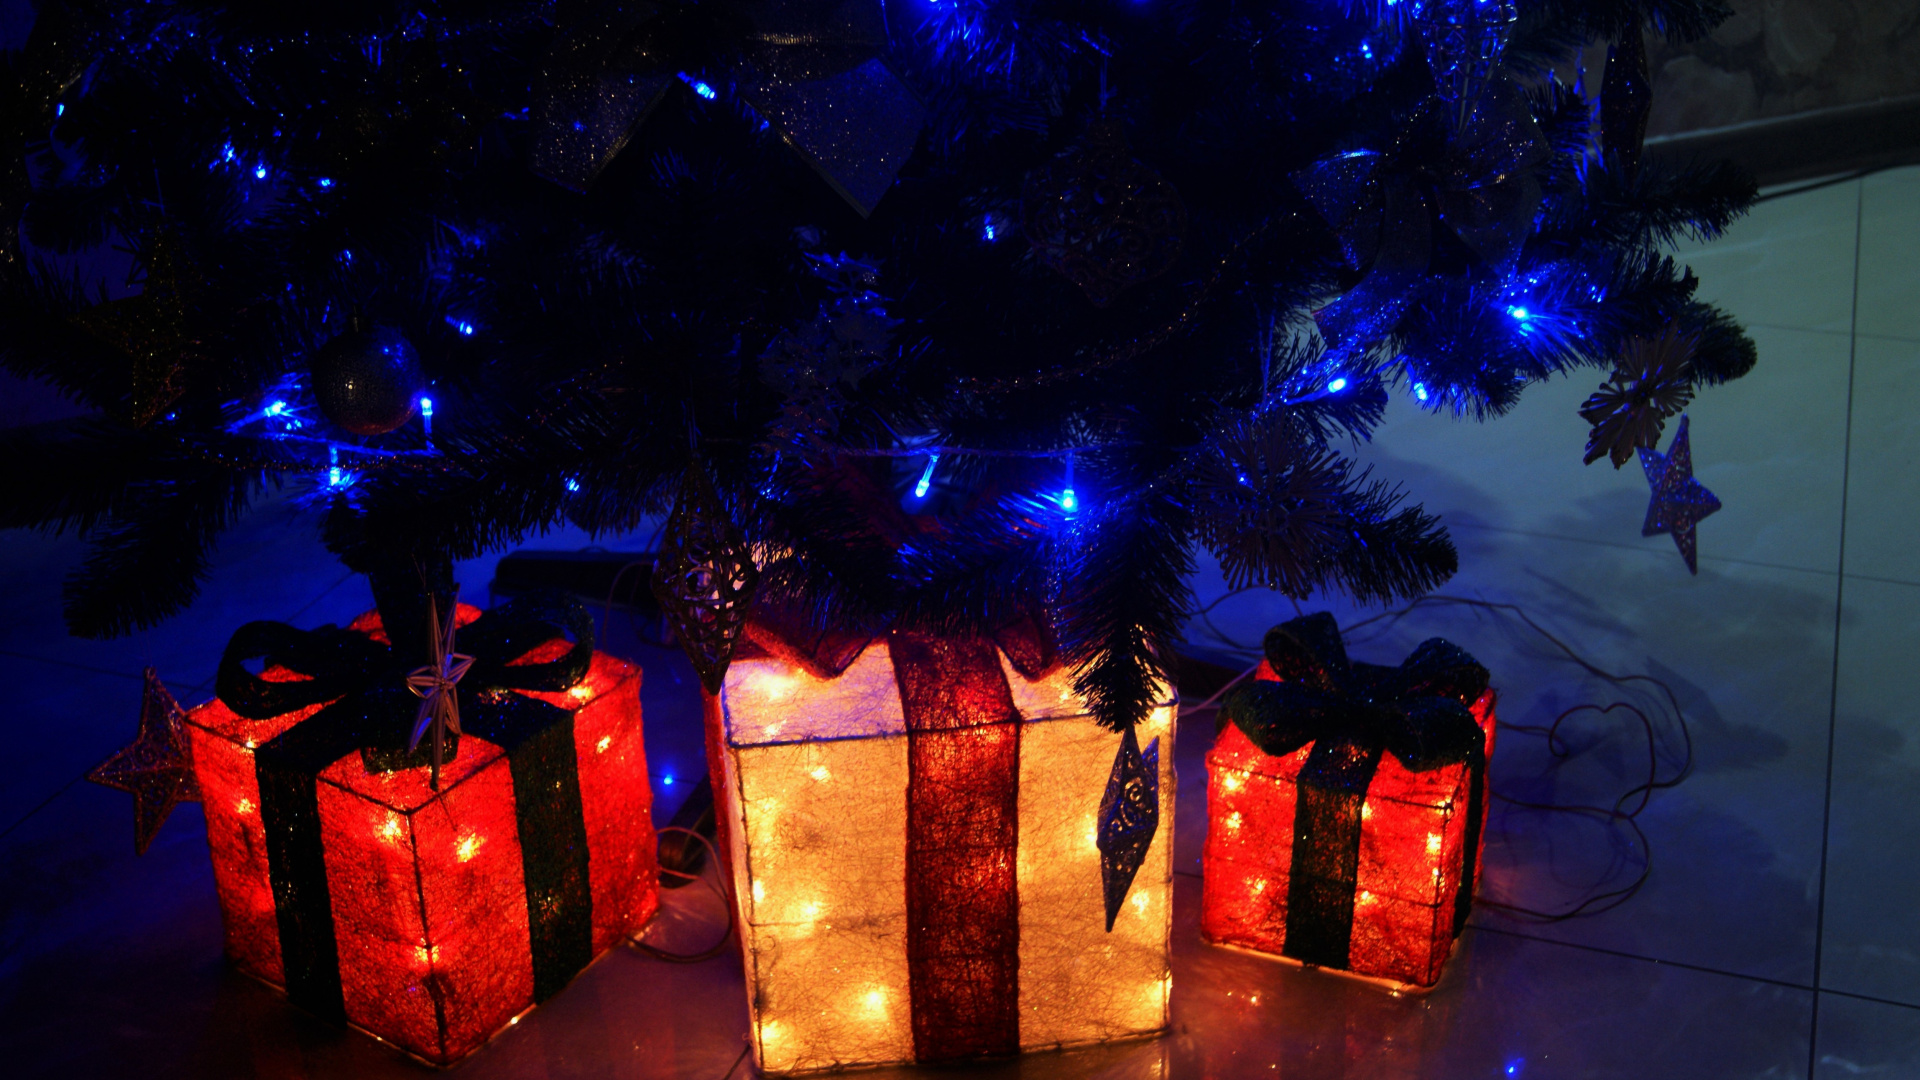 Licht, Weihnachtsbeleuchtung, Neujahr, Weihnachten, Neujahr Baum. Wallpaper in 1920x1080 Resolution